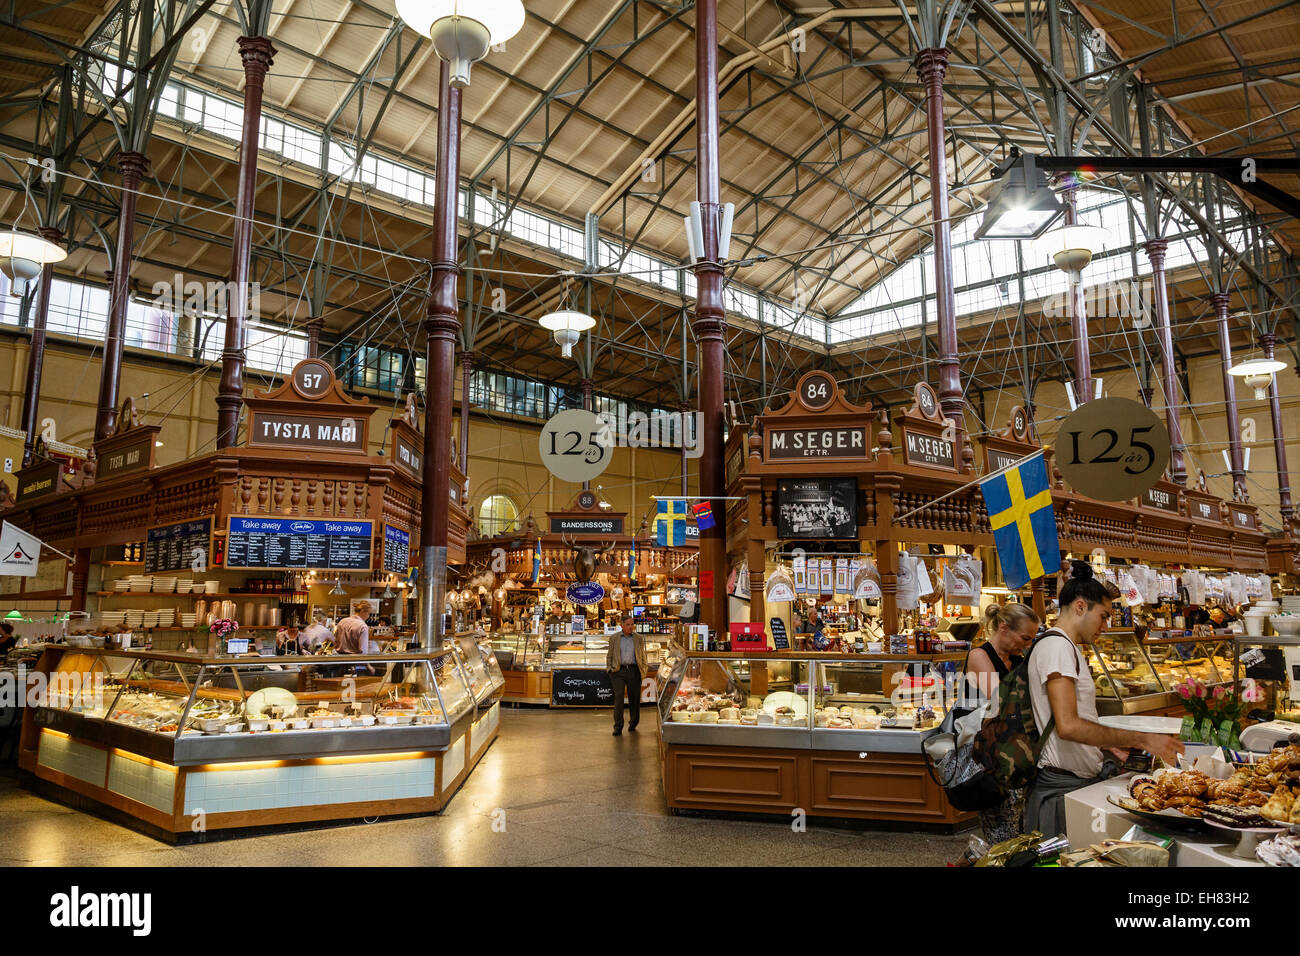 Ostermalmshallen all'interno mercato alimentare, Stoccolma, Svezia, Scandinavia, Europa Foto Stock